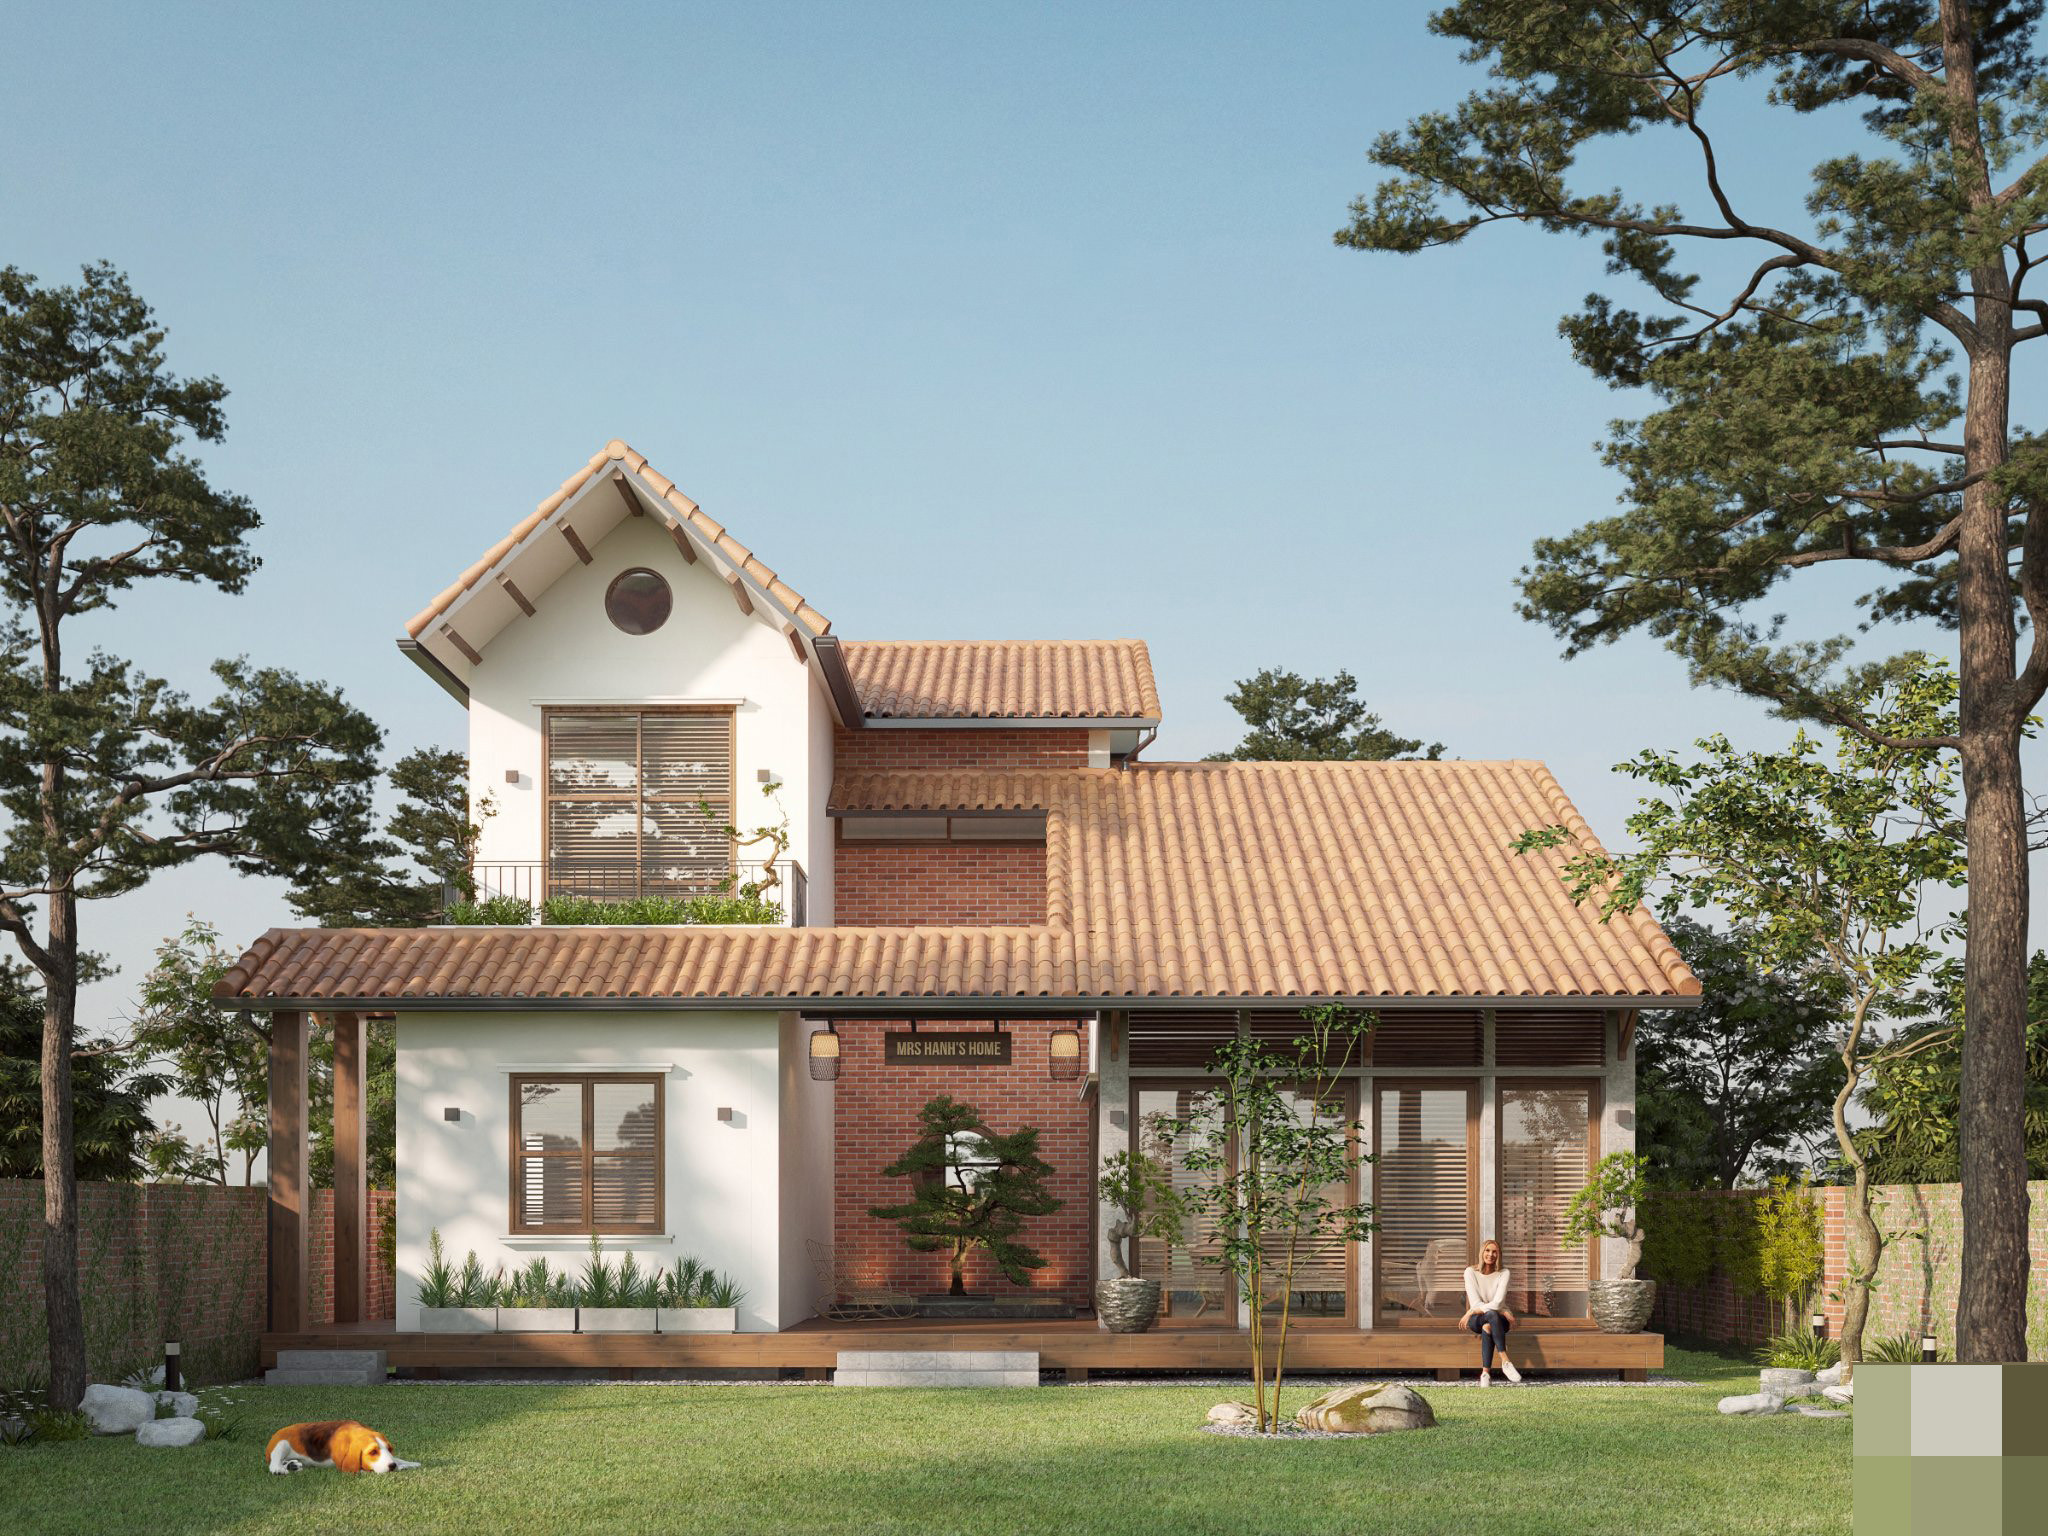 Villa ven hồ dùng mái ngói mộc mạc, lấy cảm hứng từ kiến trúc Nhật